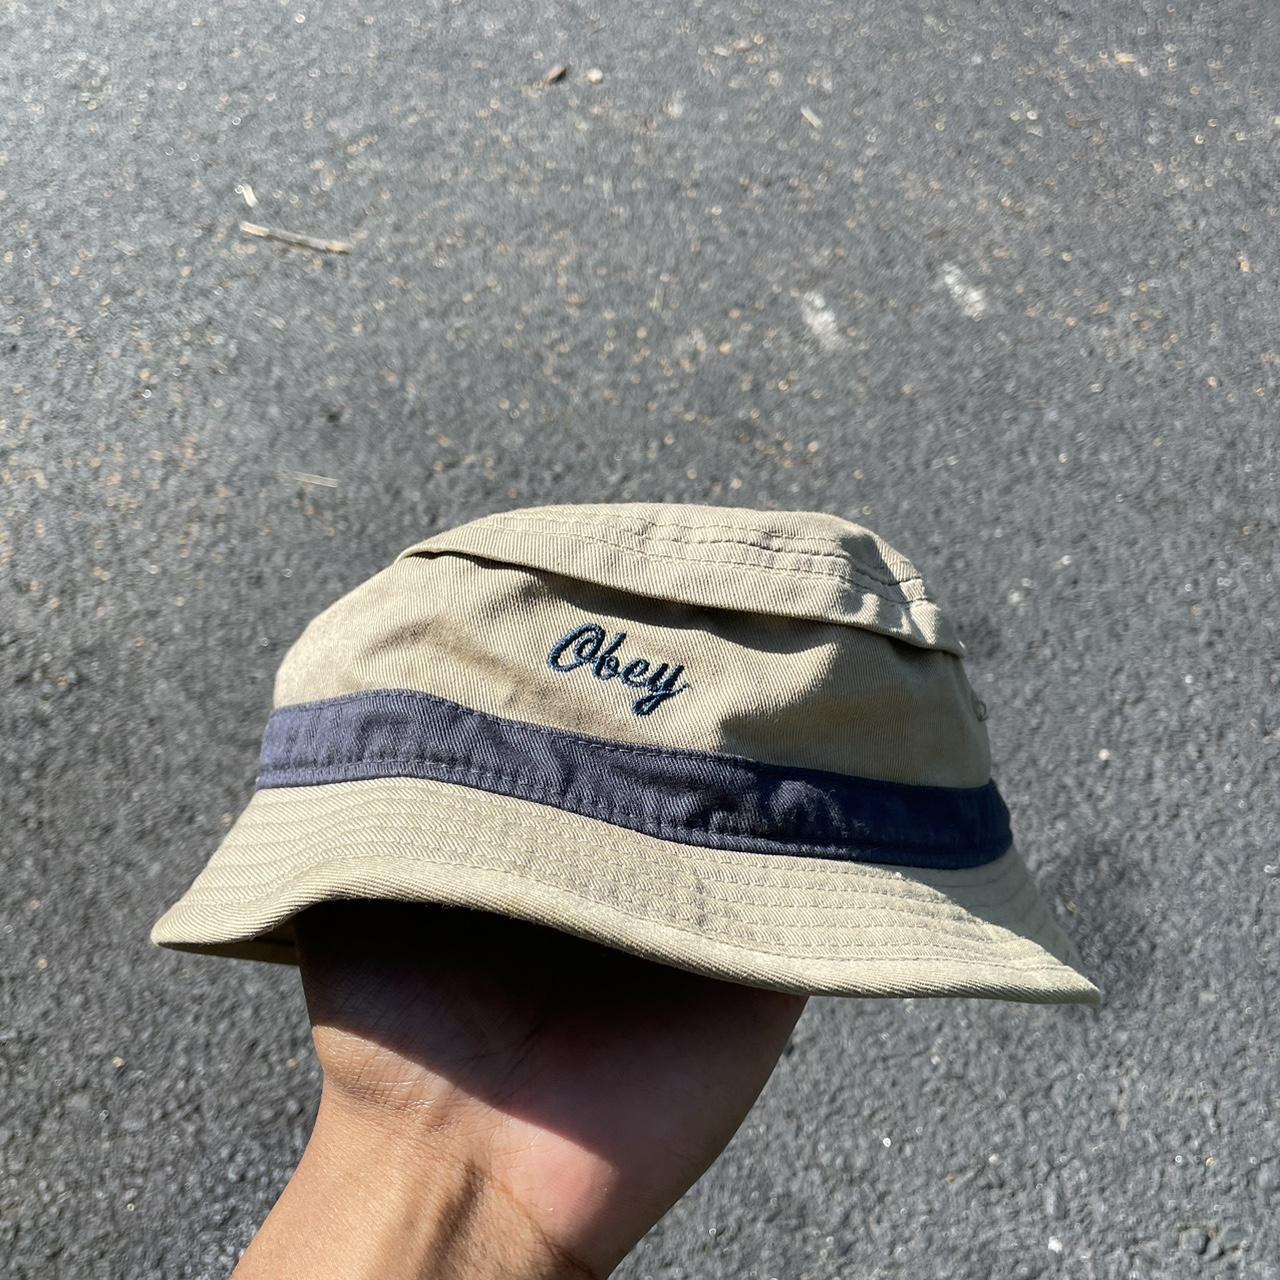 Obey Men's Khaki Hat